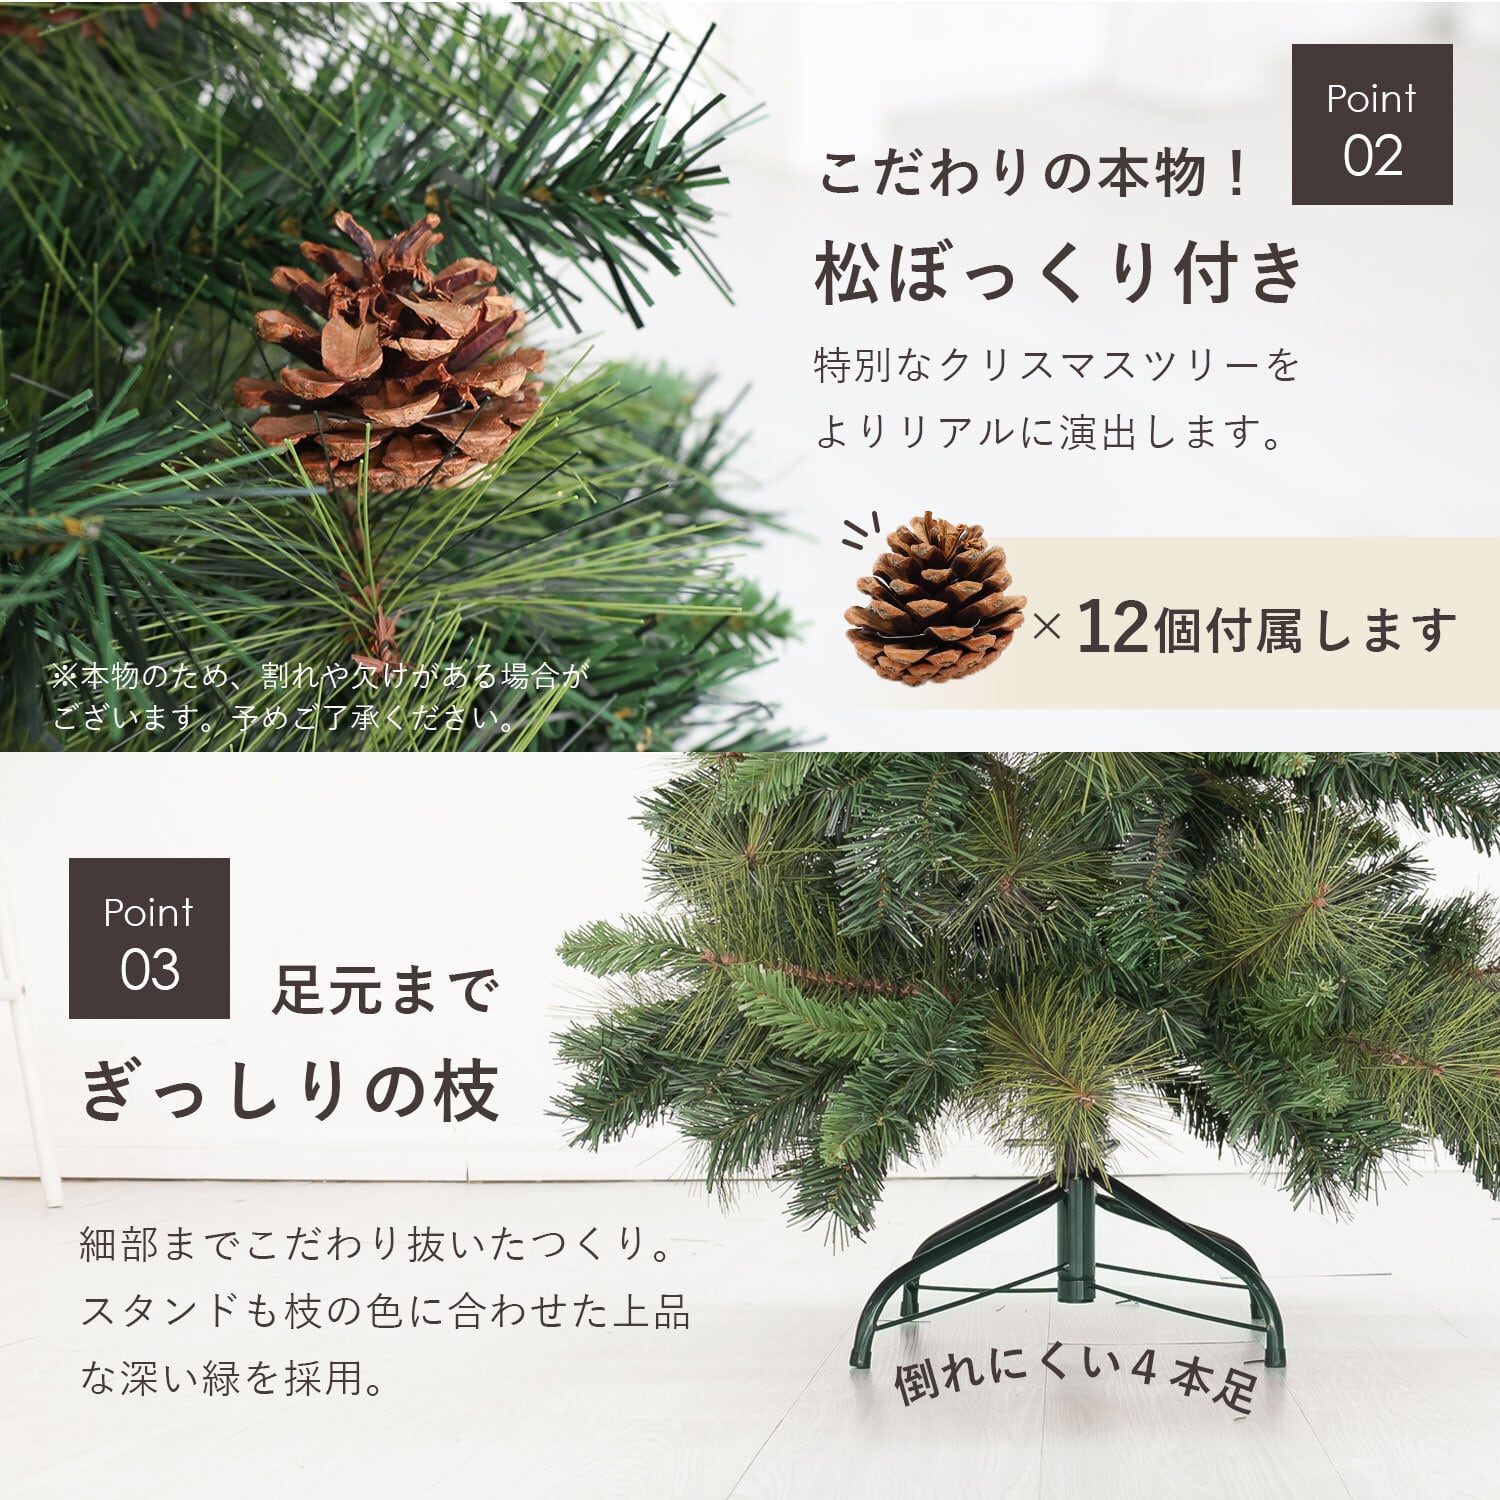 Rocotto クリスマスツリー 150cm MRG JAPAN Direct